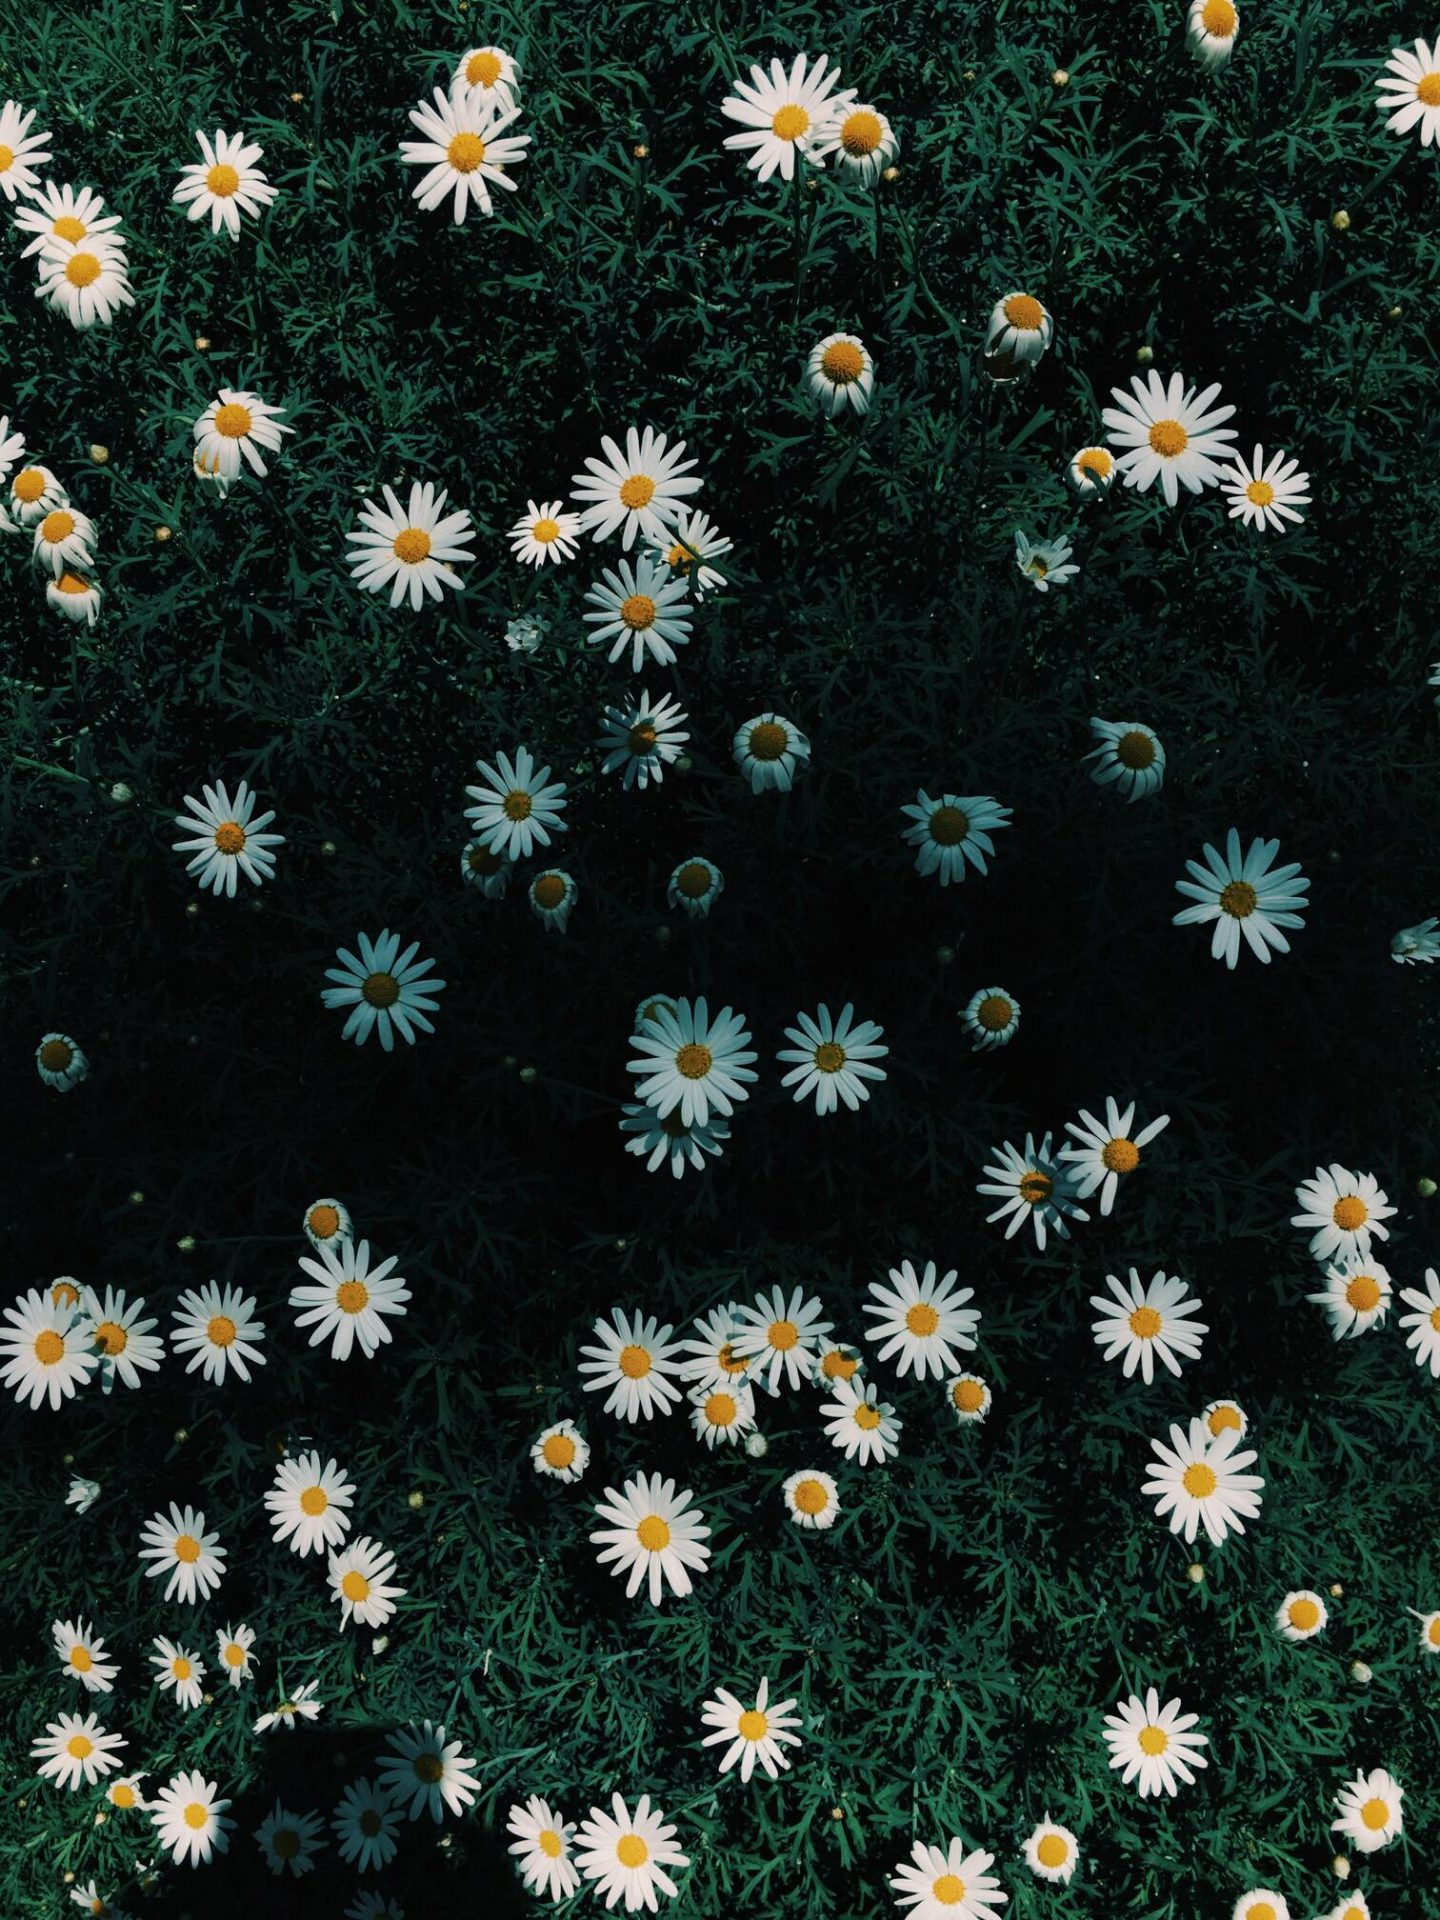 50+ hình ảnh hoa cúc dại tuyệt đẹp 33